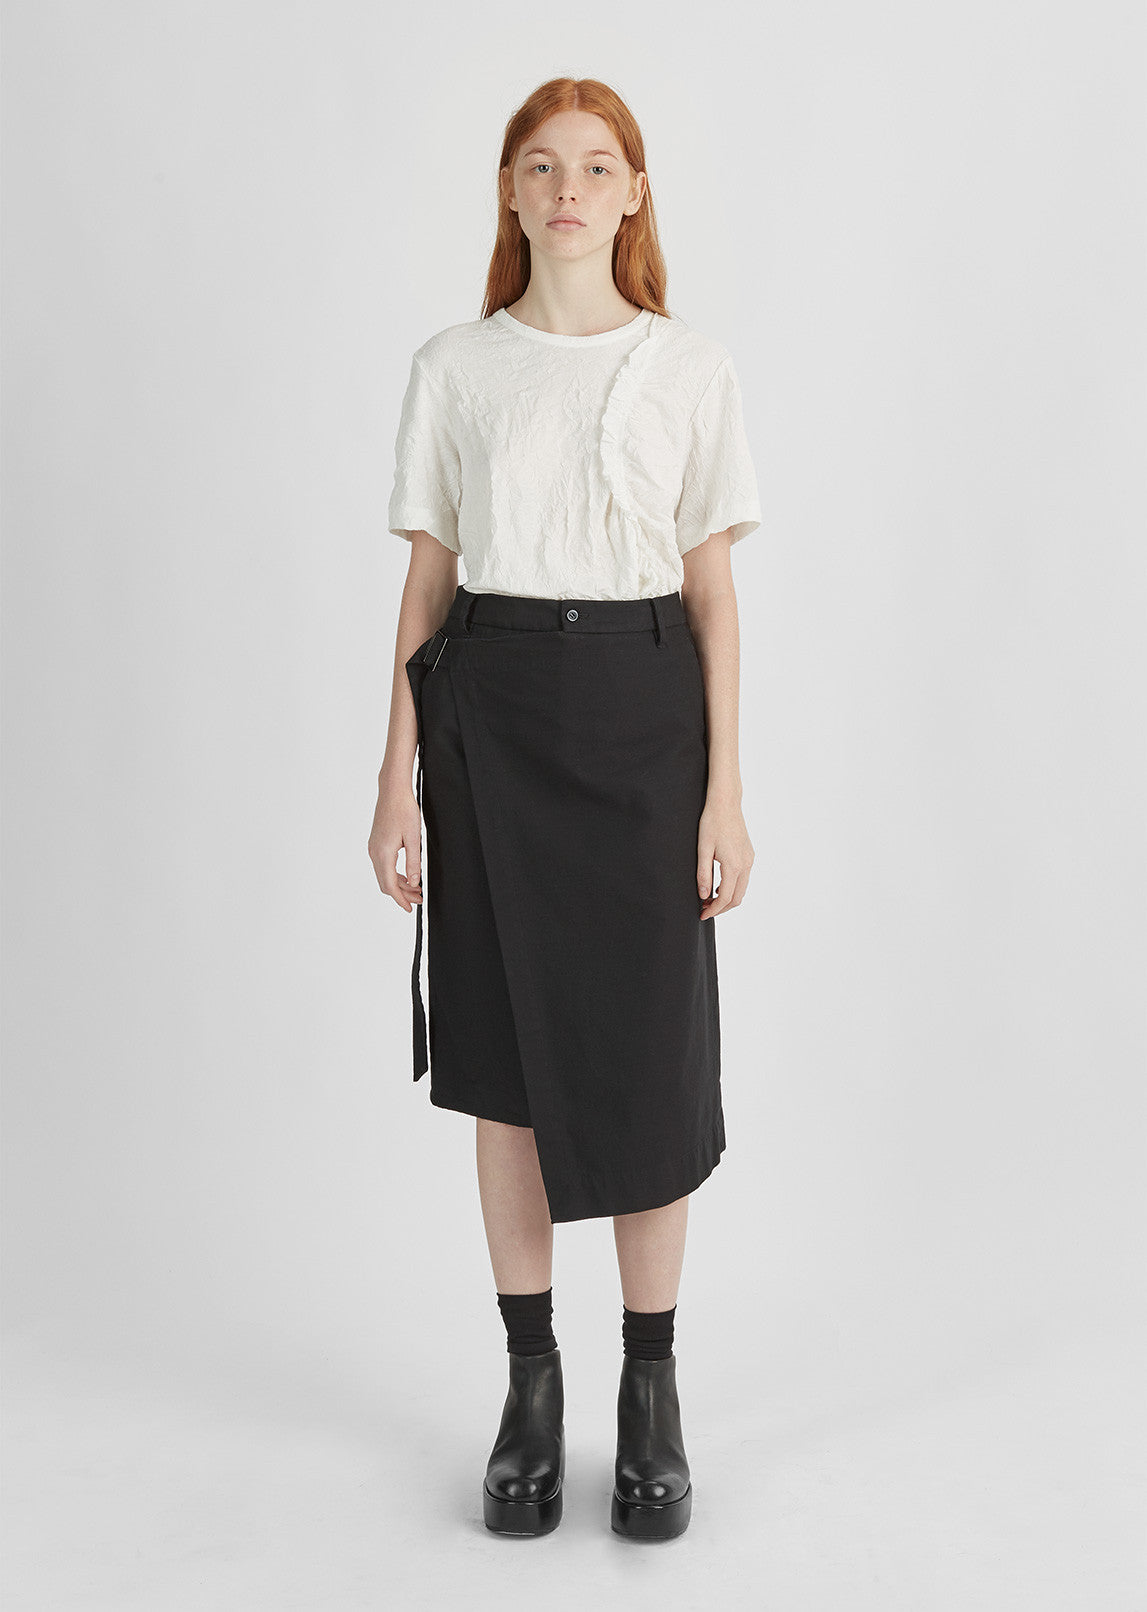 Cotton Wrap Skirt by Y's- La Garçonne